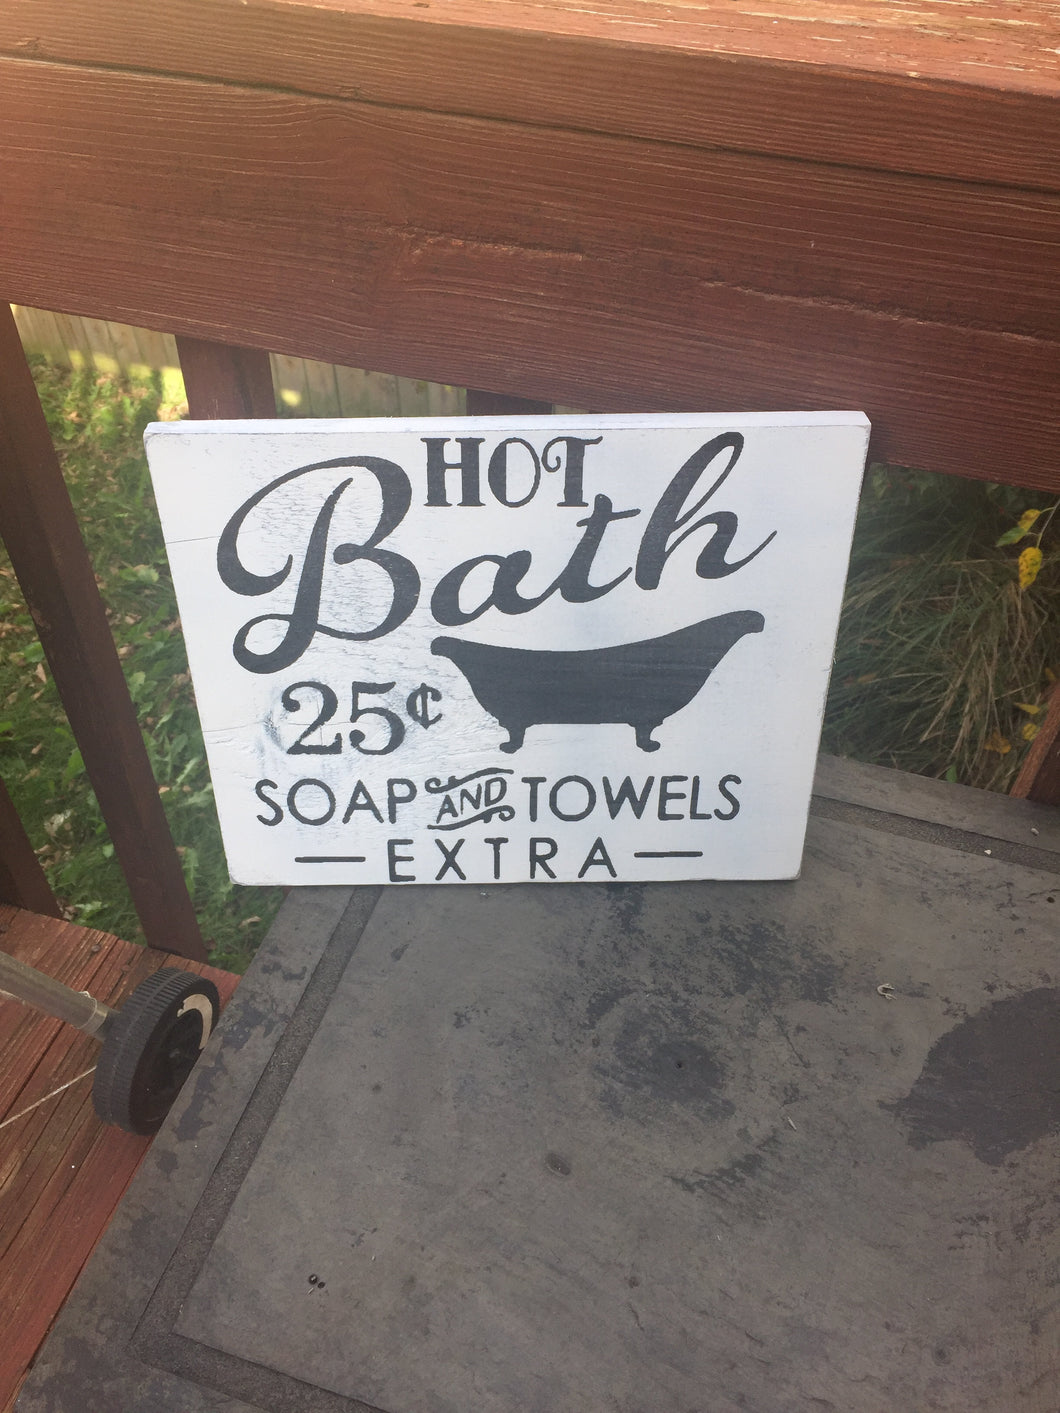 Hot Bath 25 Cents Farmhouse Bathroom Sign - Knot In Your House